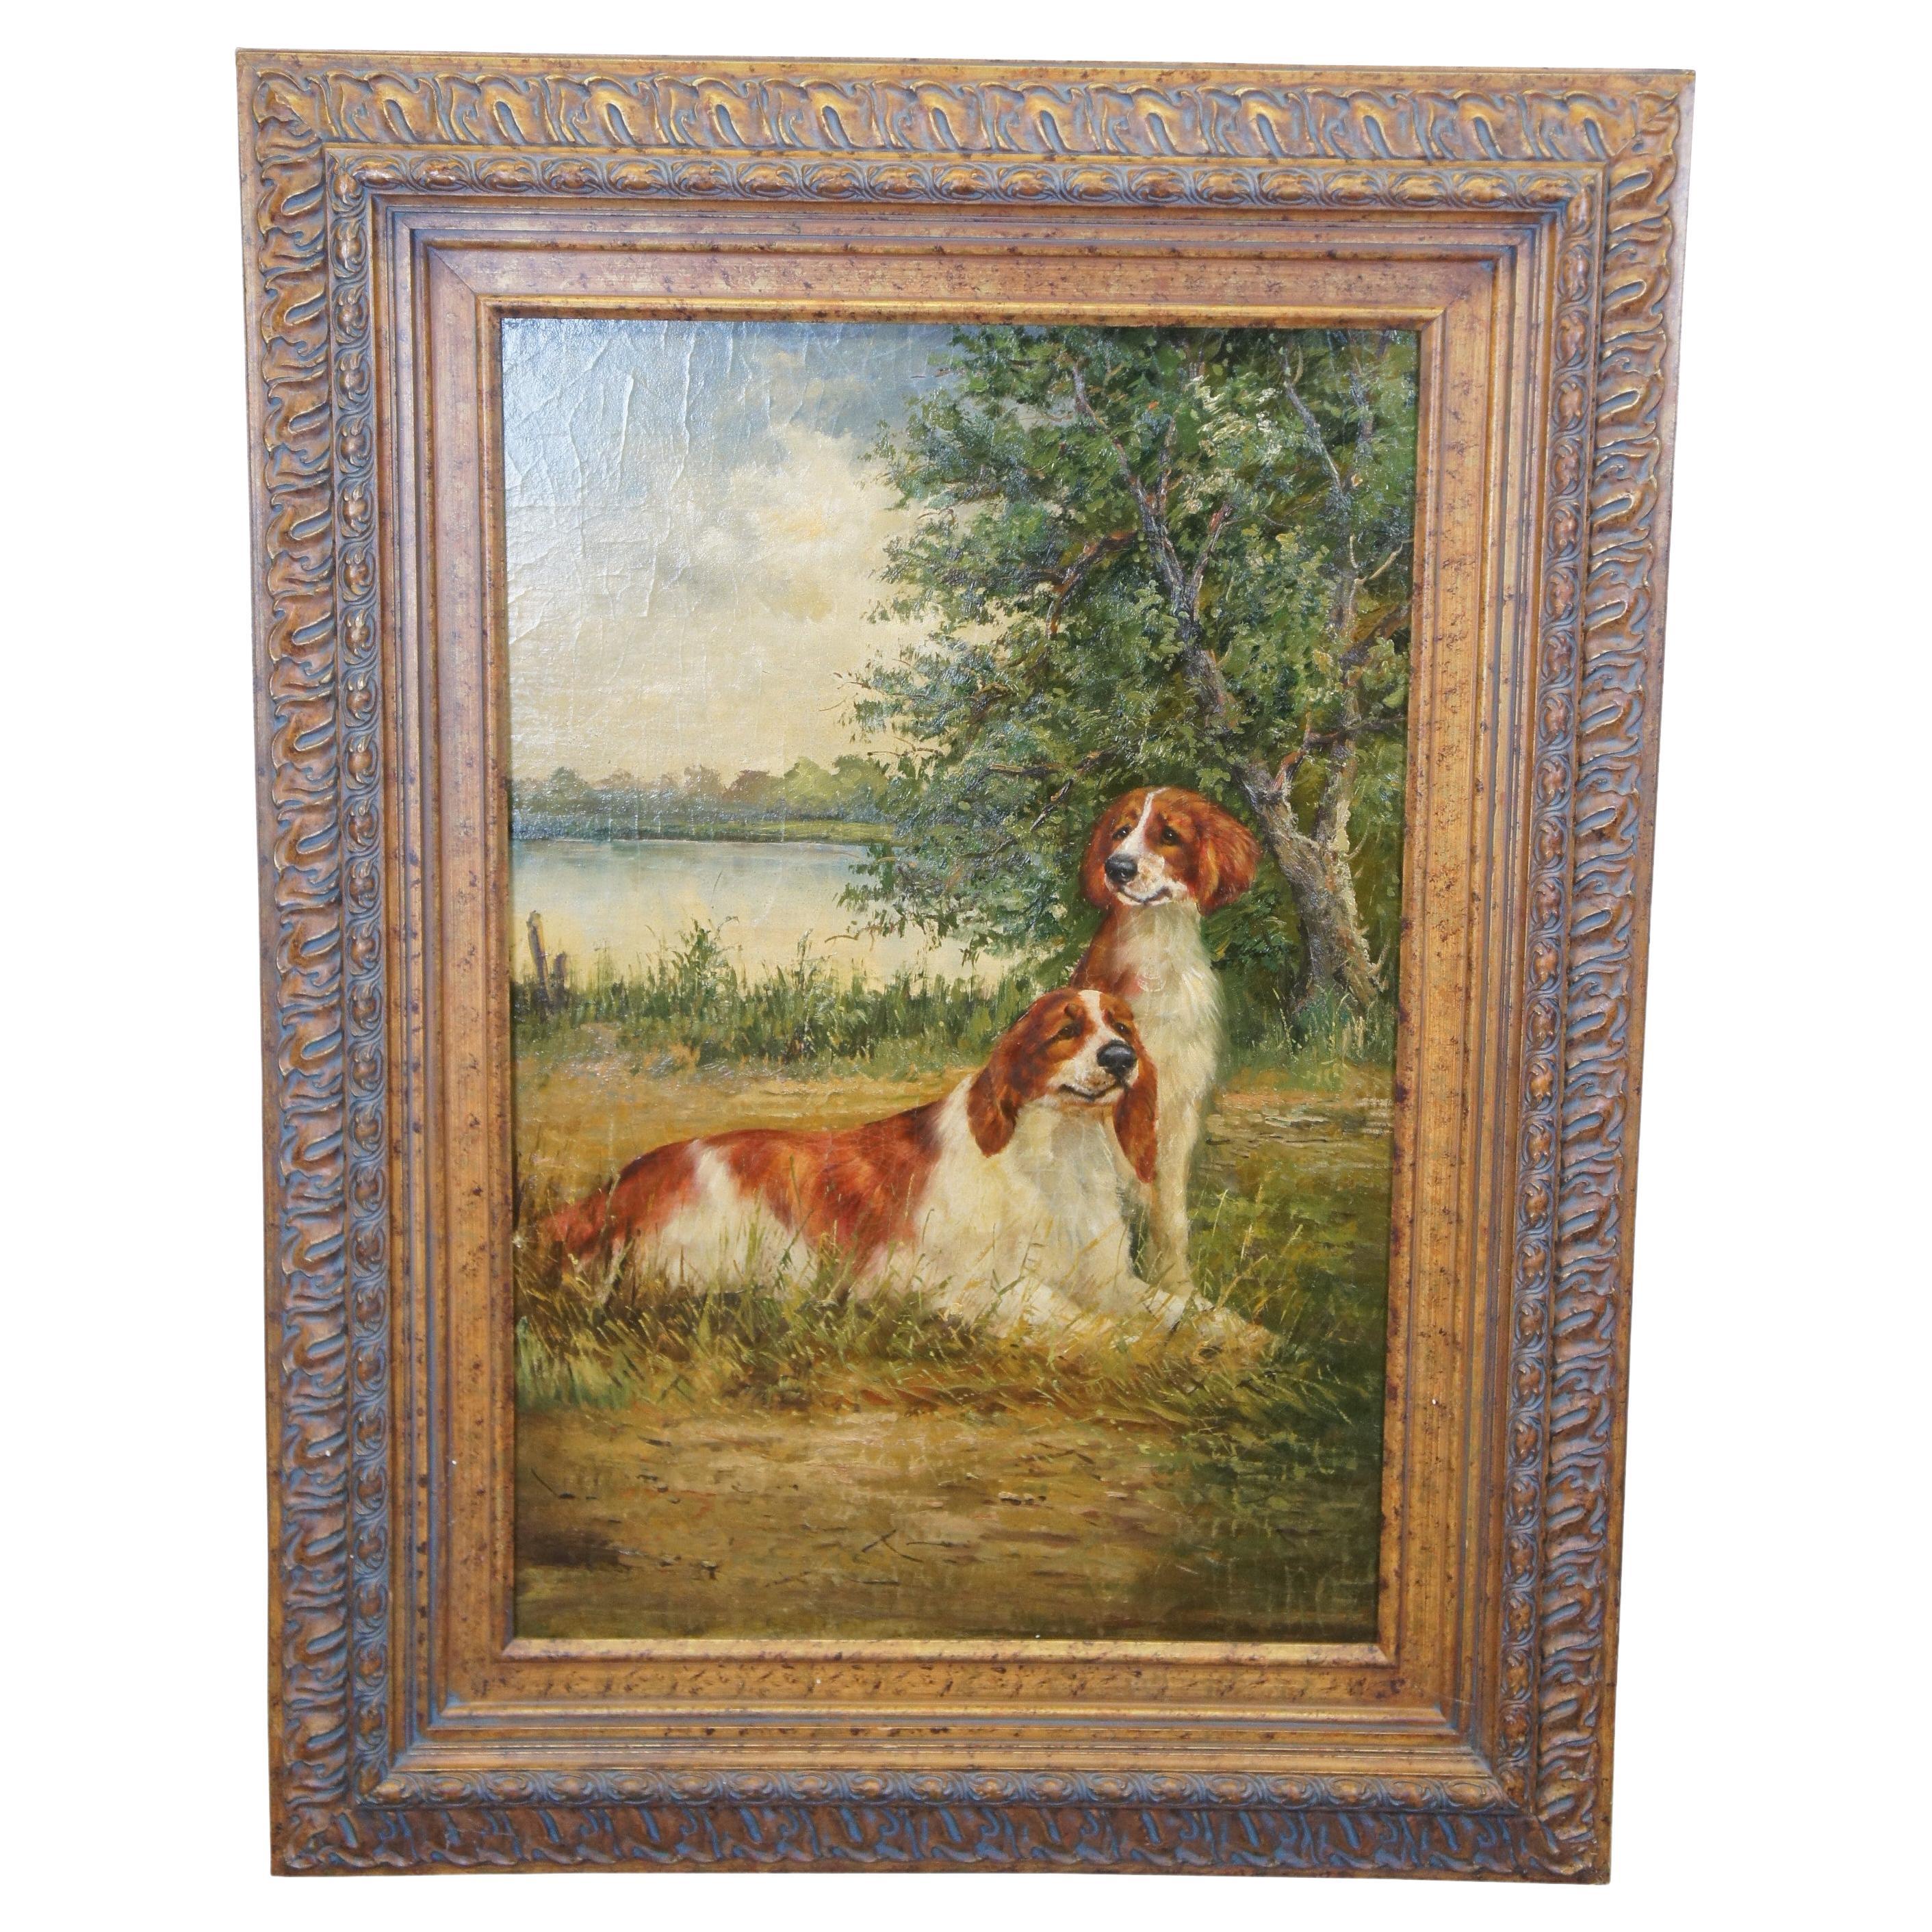 Large Springer Spaniel Dog Landscape Portrait Oil Painting on Board 49"